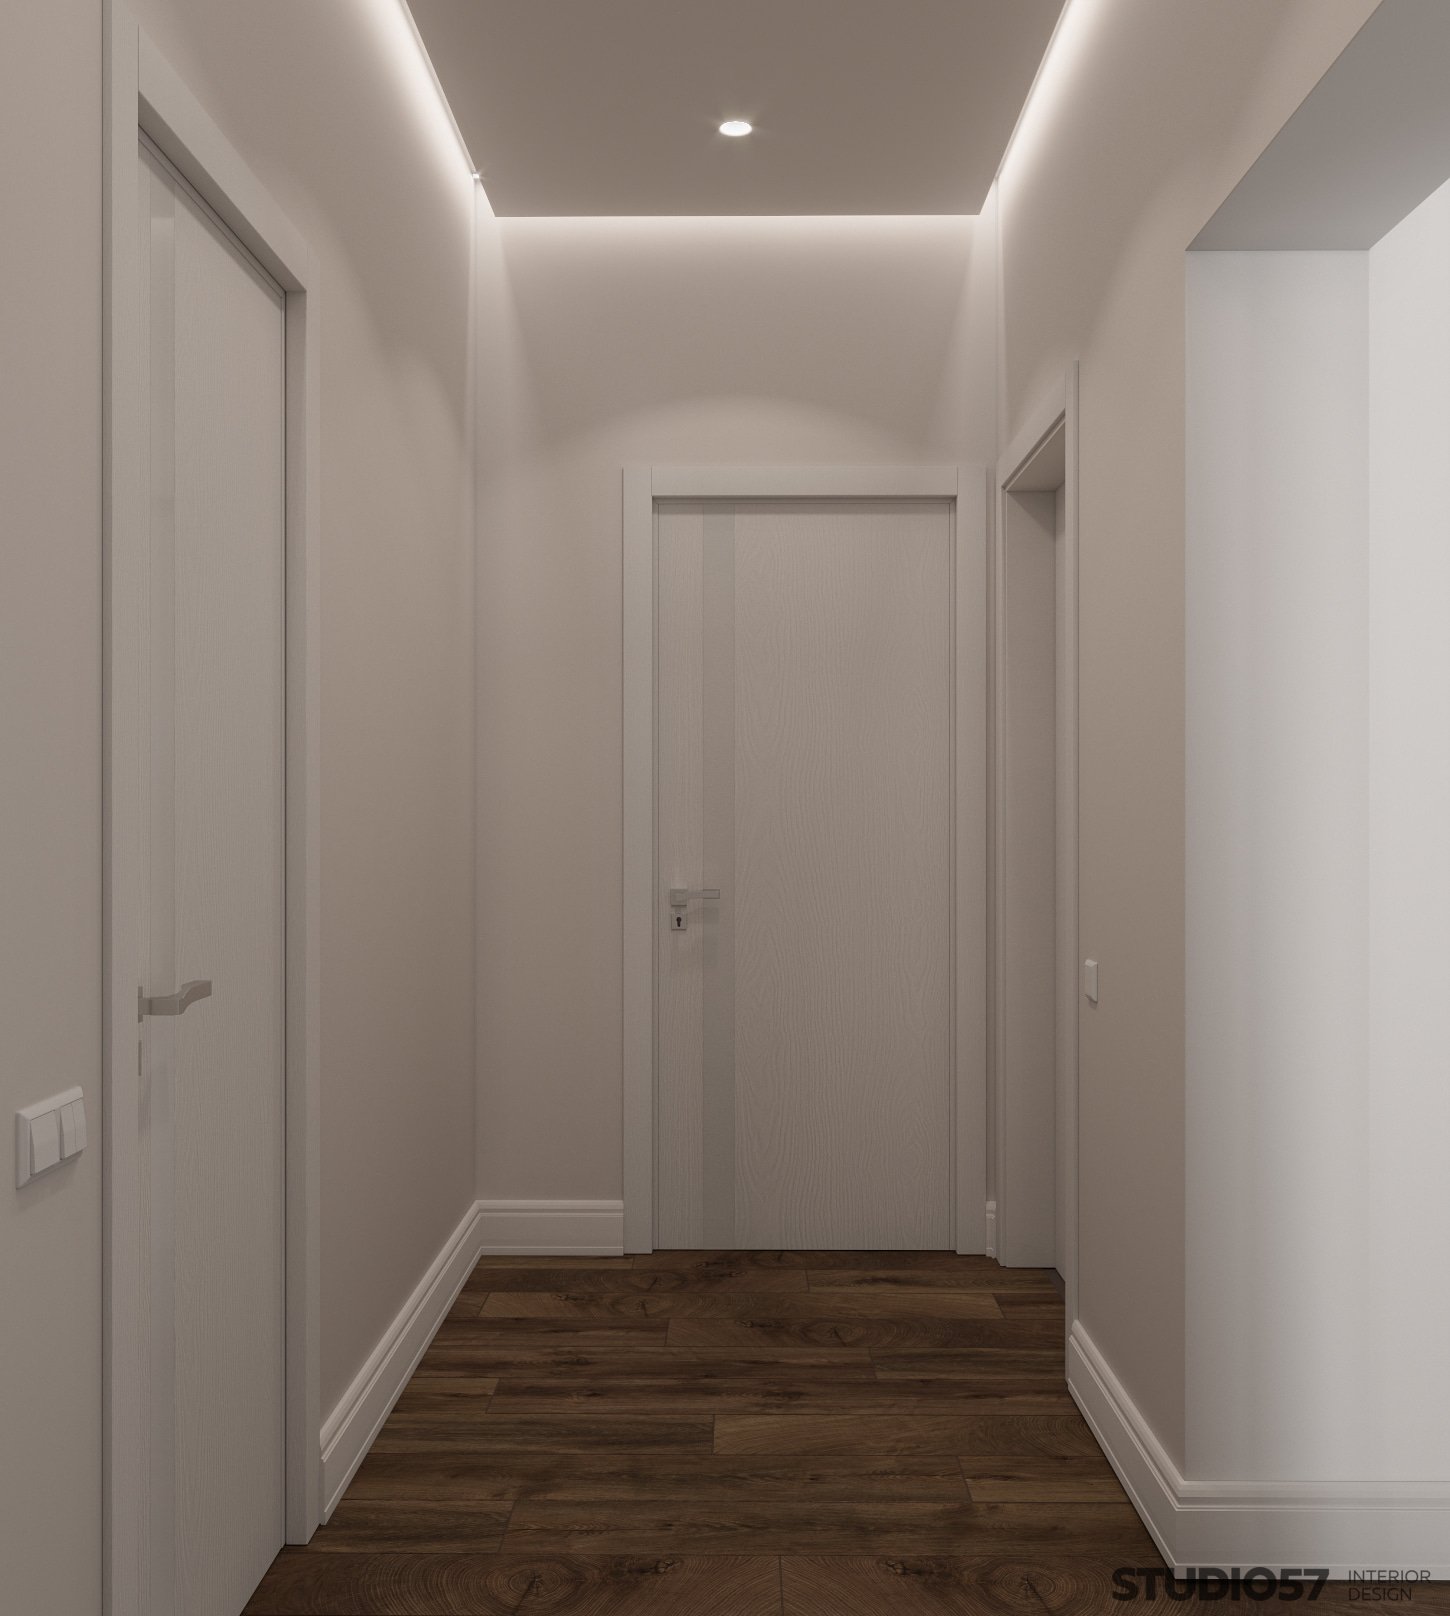 Contemporary style in the corridor interior